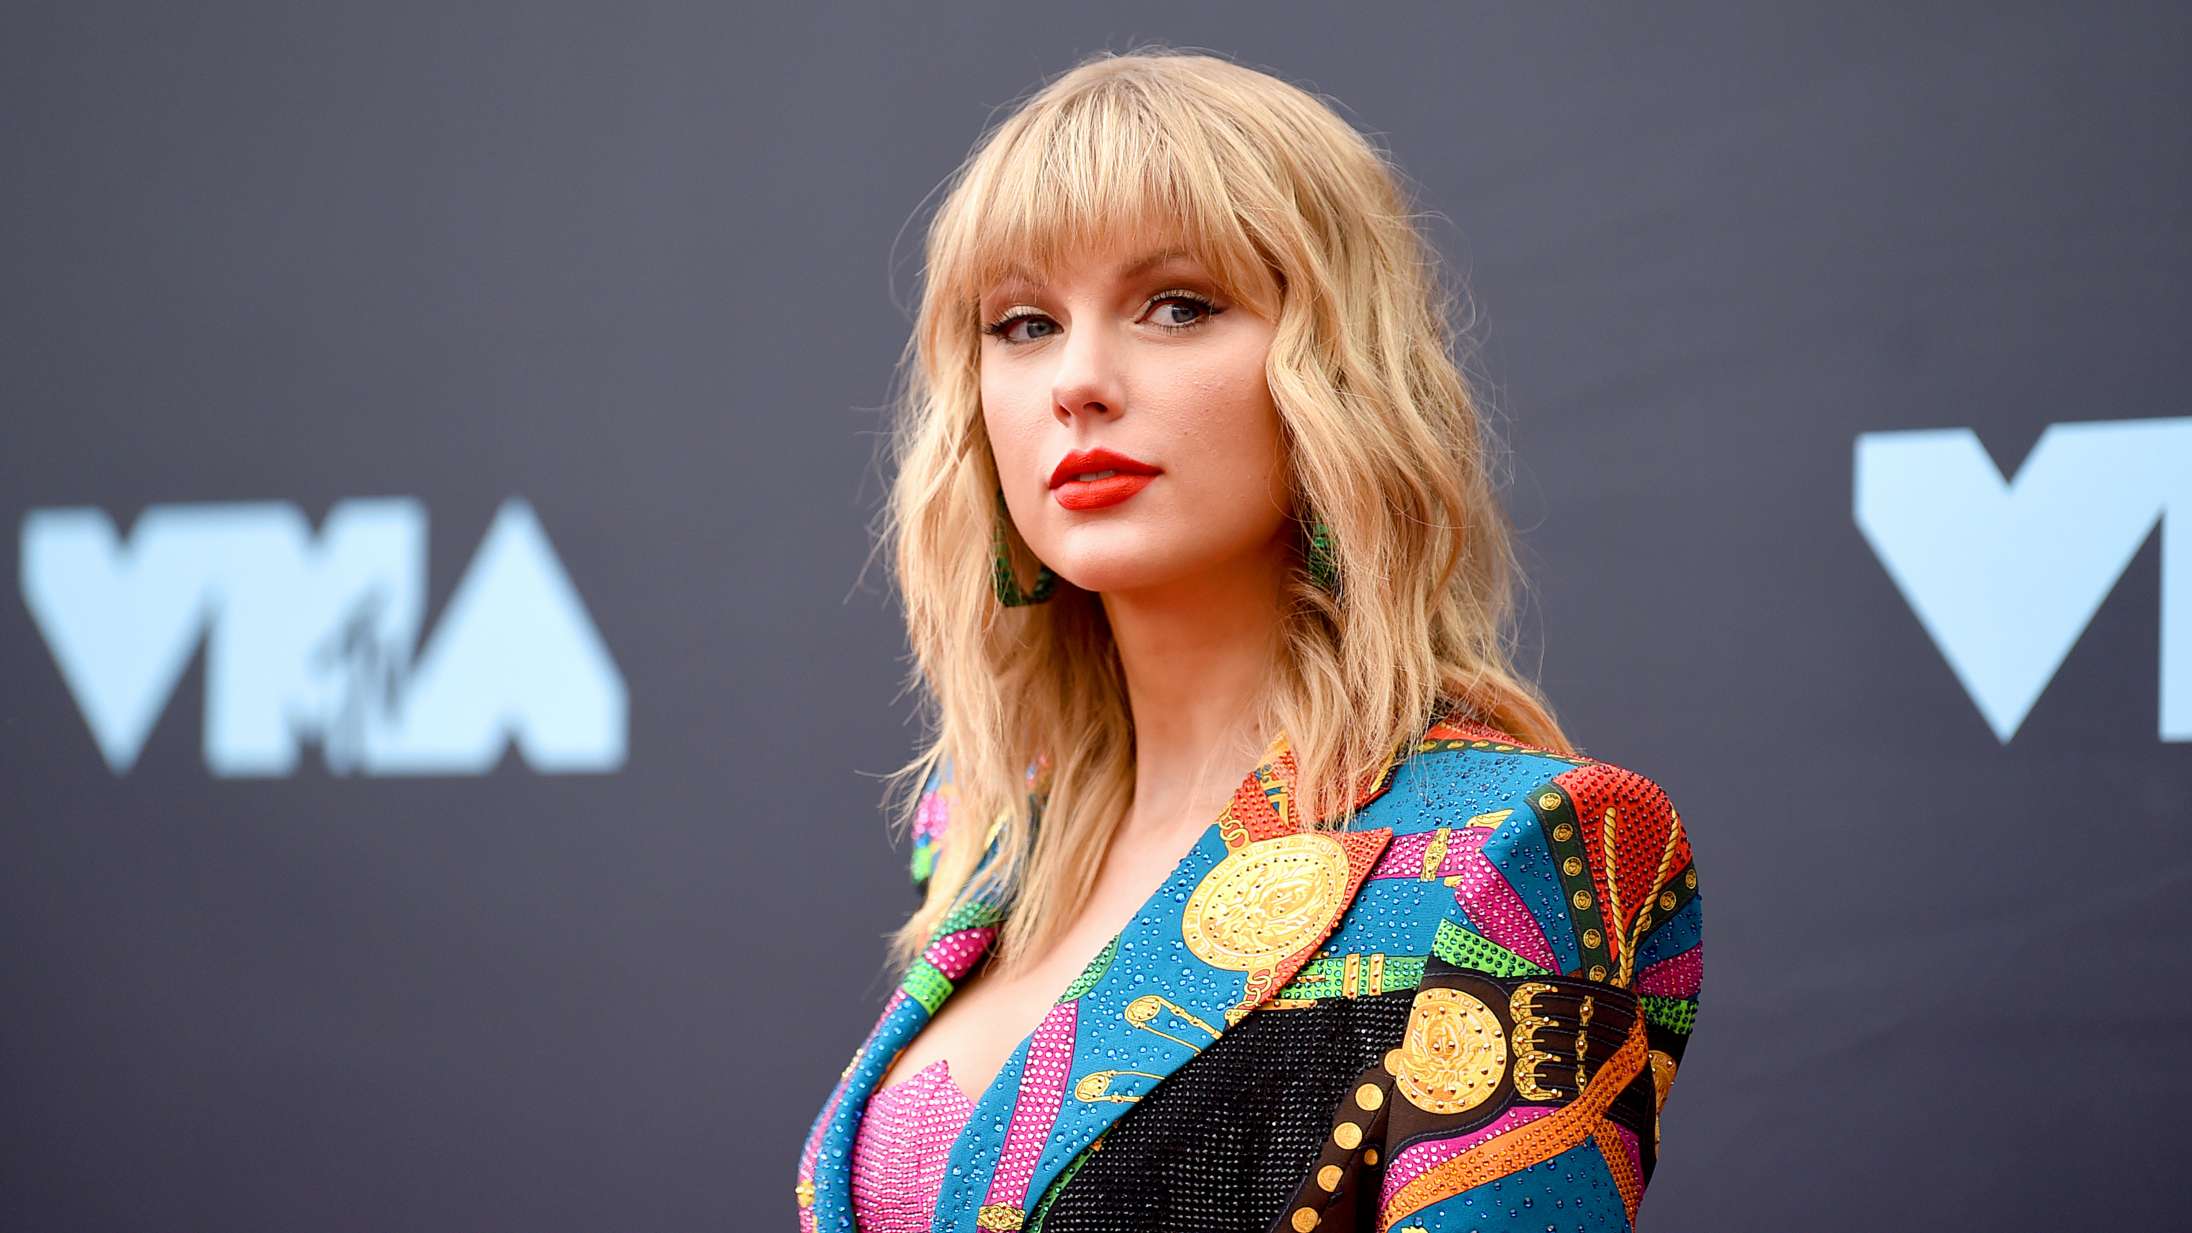 Taylor Swift deler fire hidtil uudgivne sange forud for kæmpeturné